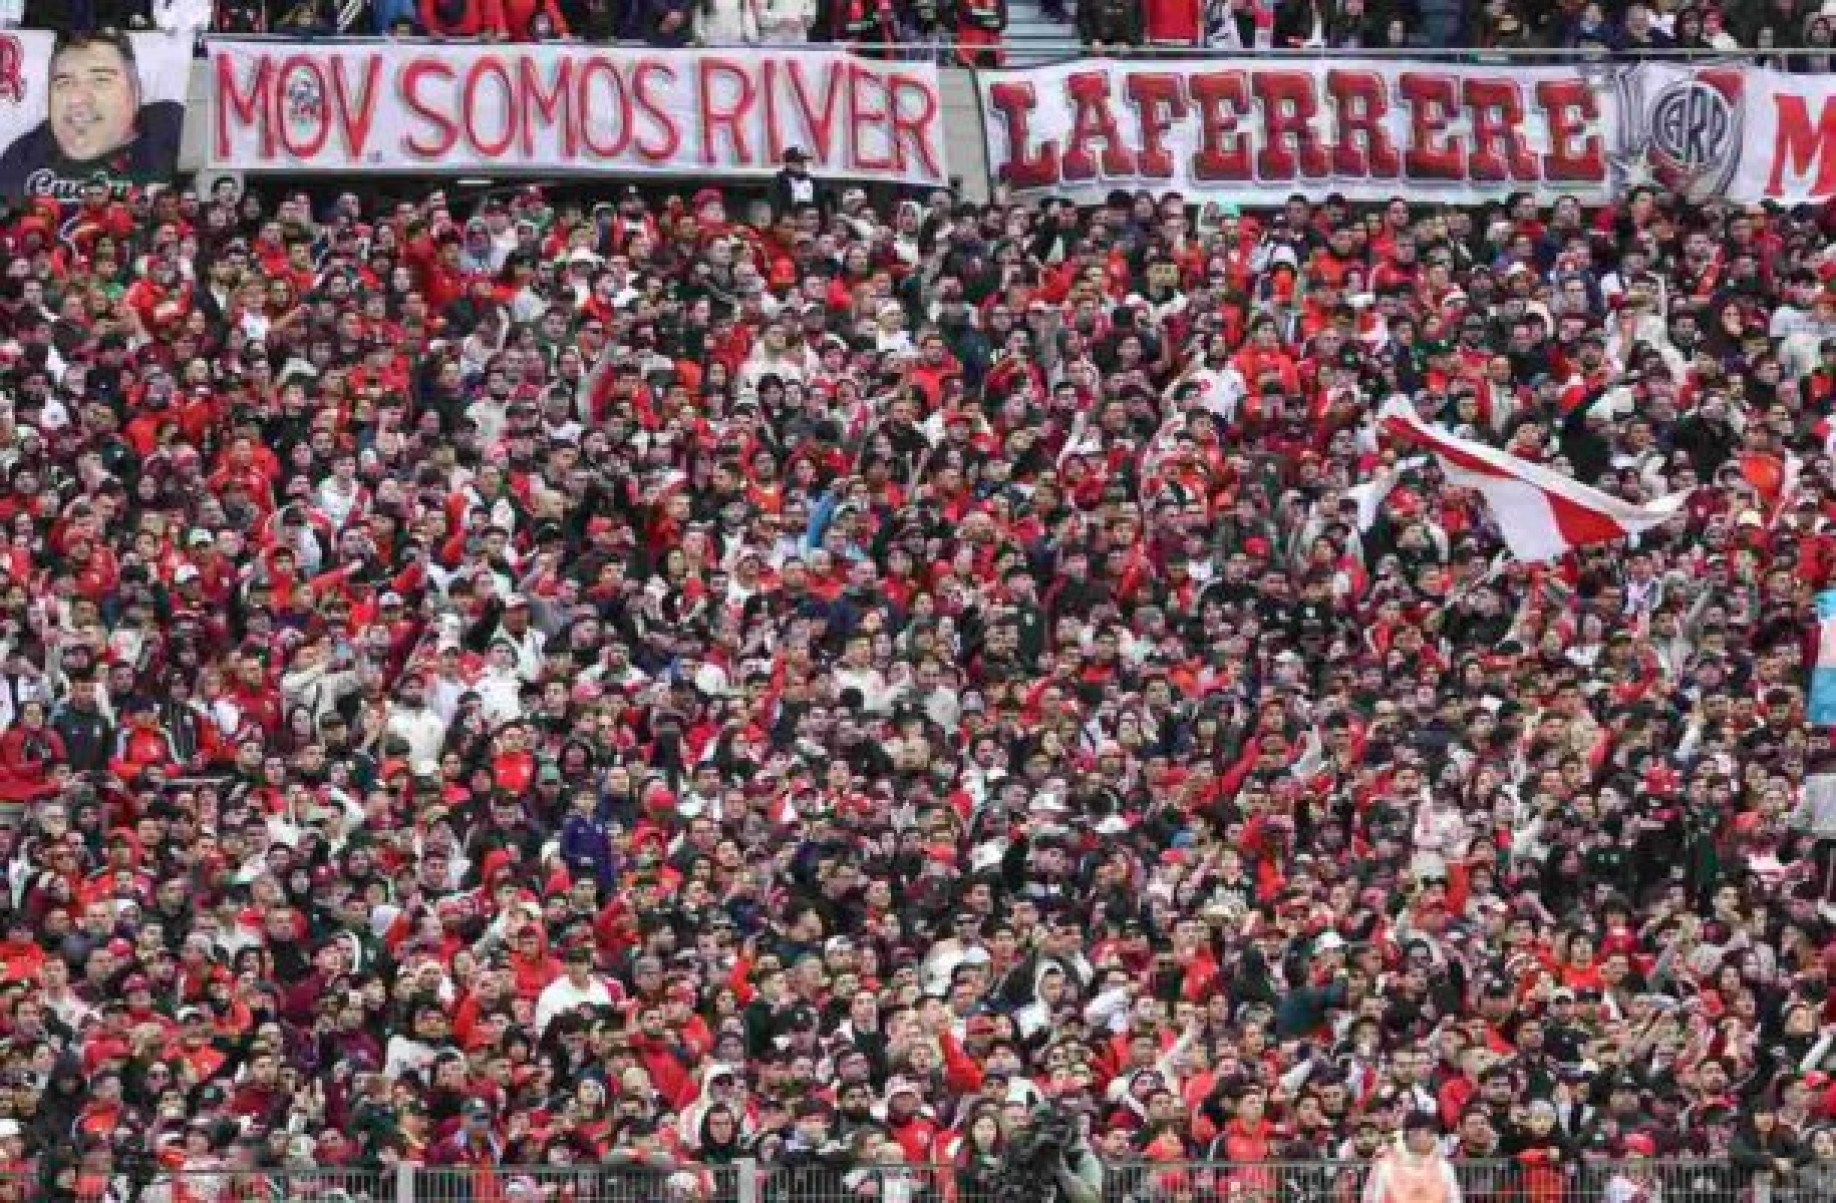 Torcida do River Plate canta música racista da seleção argentina